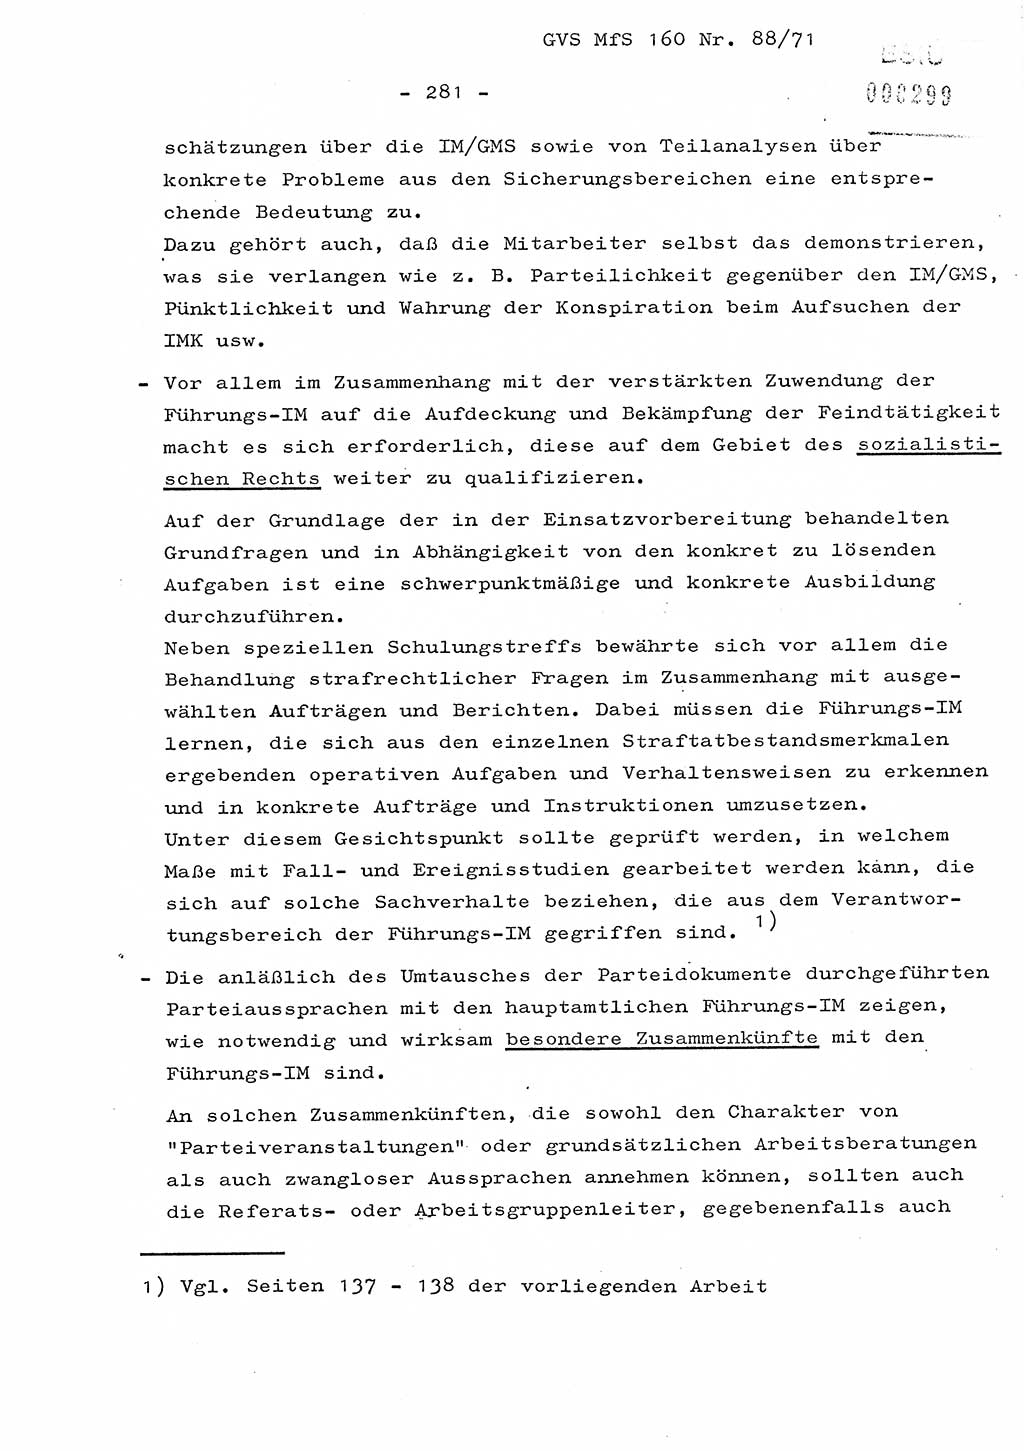 Dissertation Oberstleutnant Josef Schwarz (BV Schwerin), Major Fritz Amm (JHS), Hauptmann Peter Gräßler (JHS), Ministerium für Staatssicherheit (MfS) [Deutsche Demokratische Republik (DDR)], Juristische Hochschule (JHS), Geheime Verschlußsache (GVS) 160-88/71, Potsdam 1972, Seite 281 (Diss. MfS DDR JHS GVS 160-88/71 1972, S. 281)